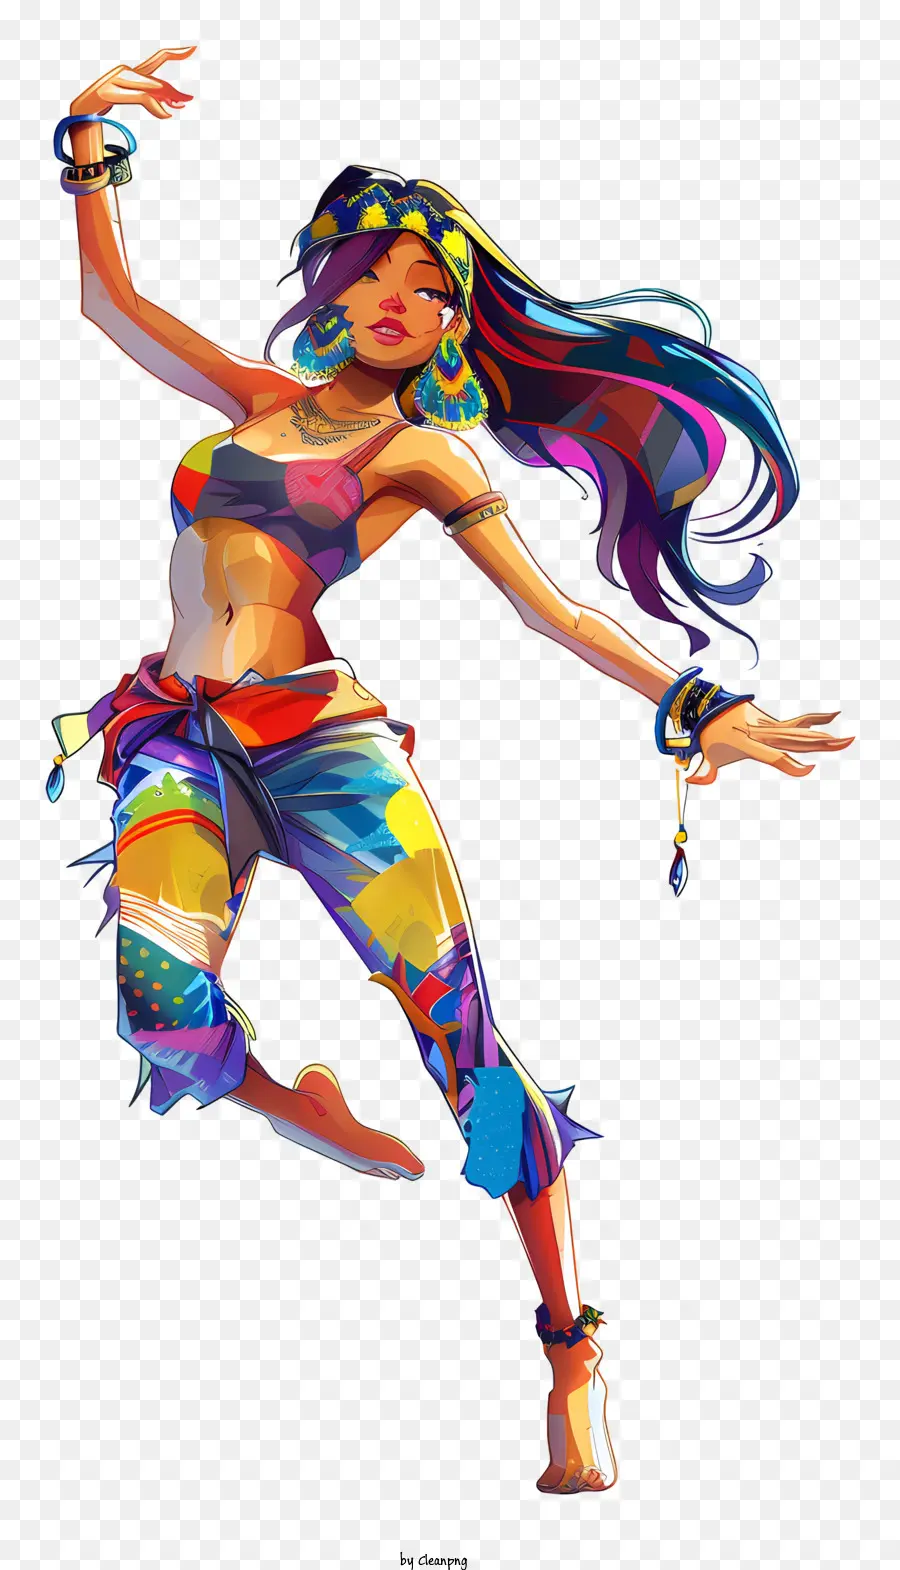 ngày khiêu vũ quốc tế - Người phụ nữ nhảy múa trong trang phục đầy màu sắc, mỉm cười vui vẻ